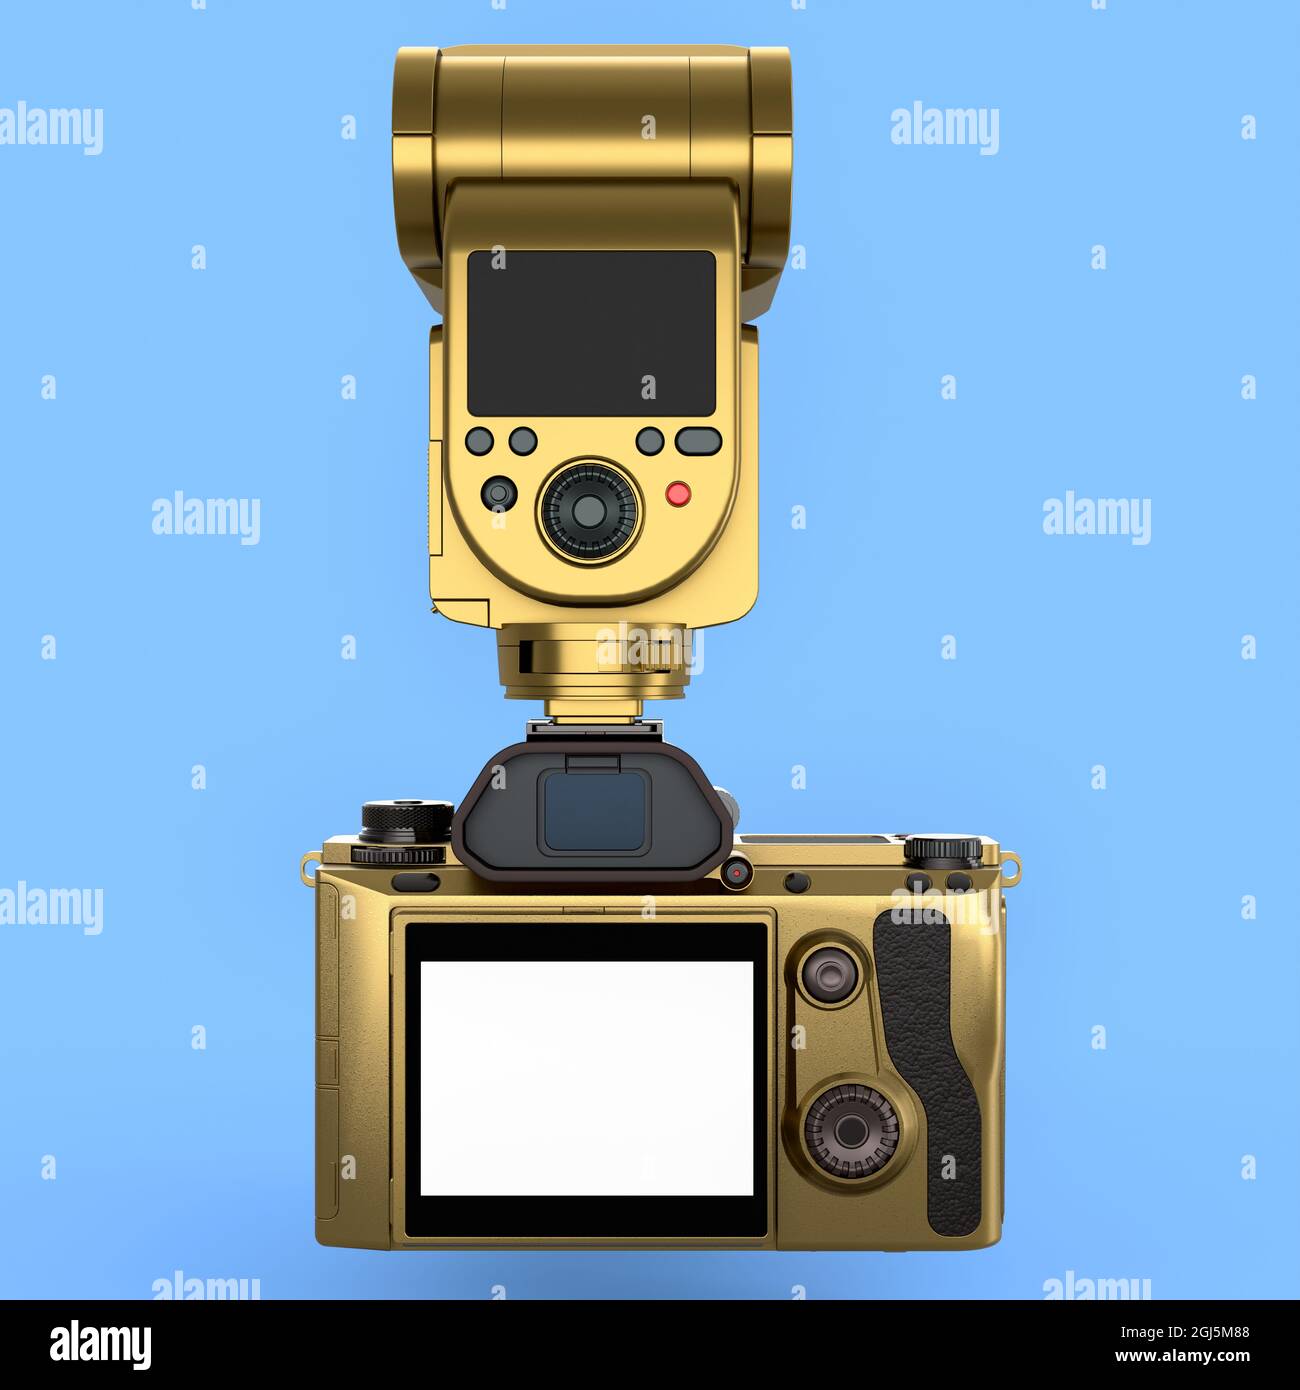 Concetto di inesistente oro DSLR fotocamera con obiettivo e flash esterno speedlight isolato su sfondo blu. Rendering 3D della fotografia professionale Foto Stock